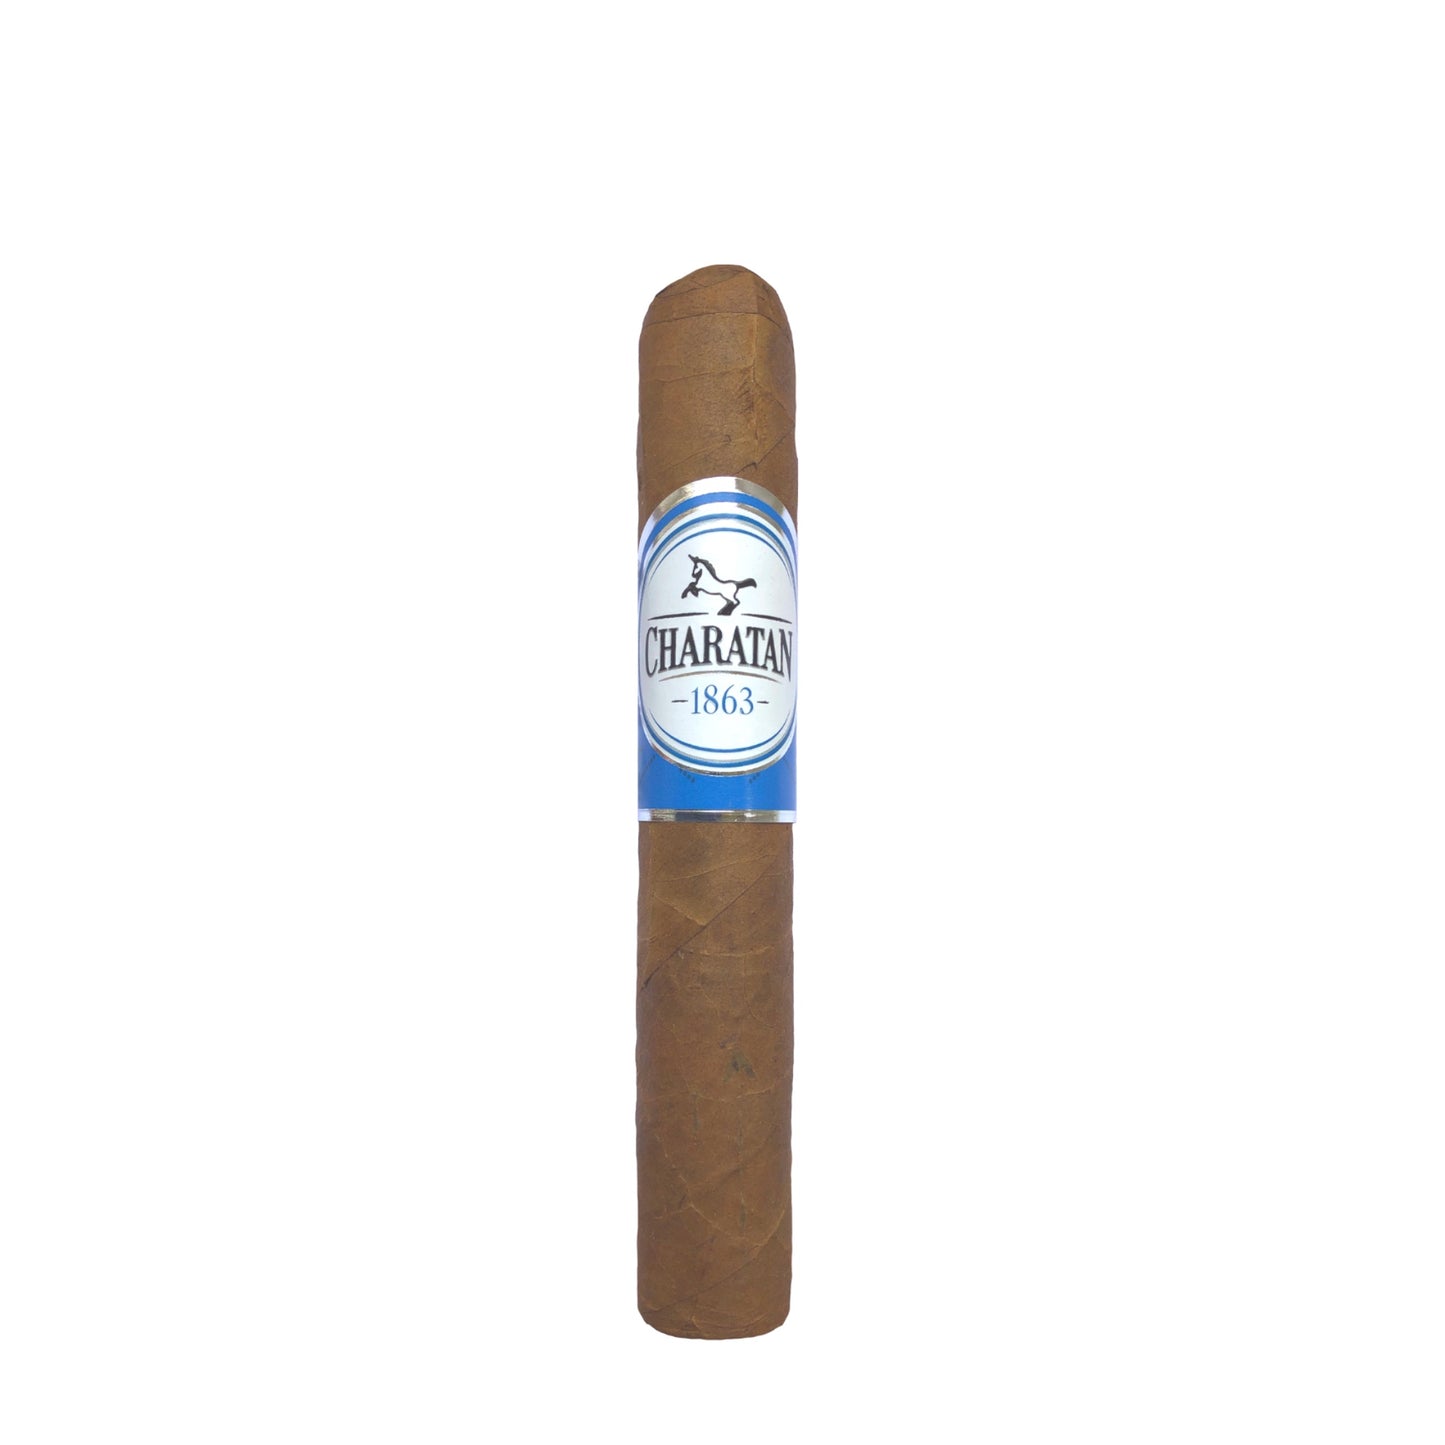 Charatan Robusto Cigar